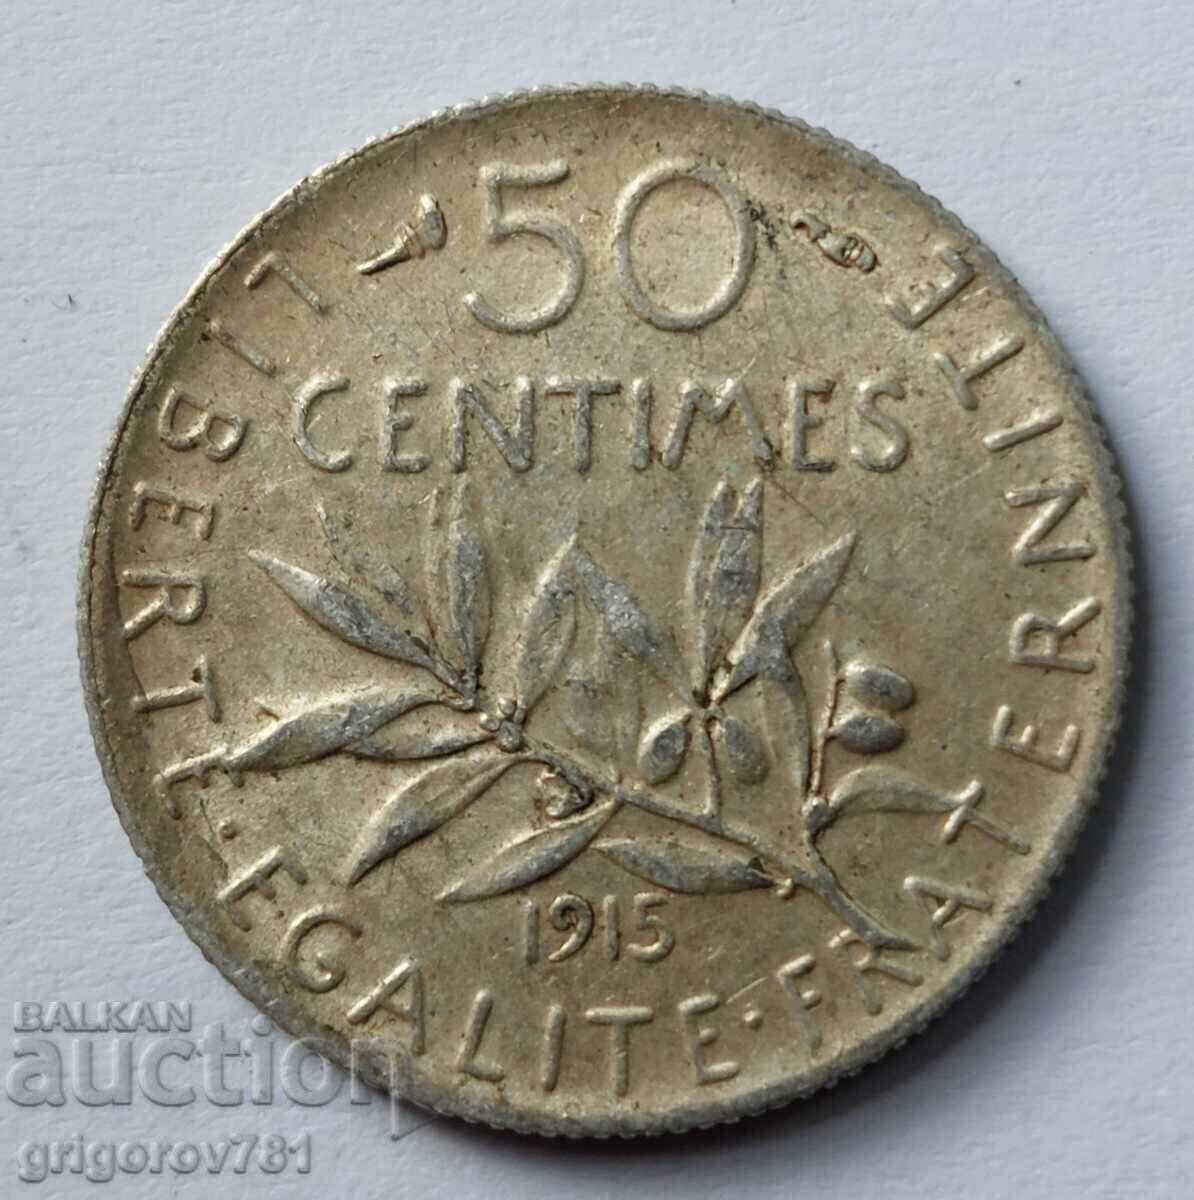 Ασημένιο 50 εκατοστά Γαλλία 1915 - ασημένιο νόμισμα №32